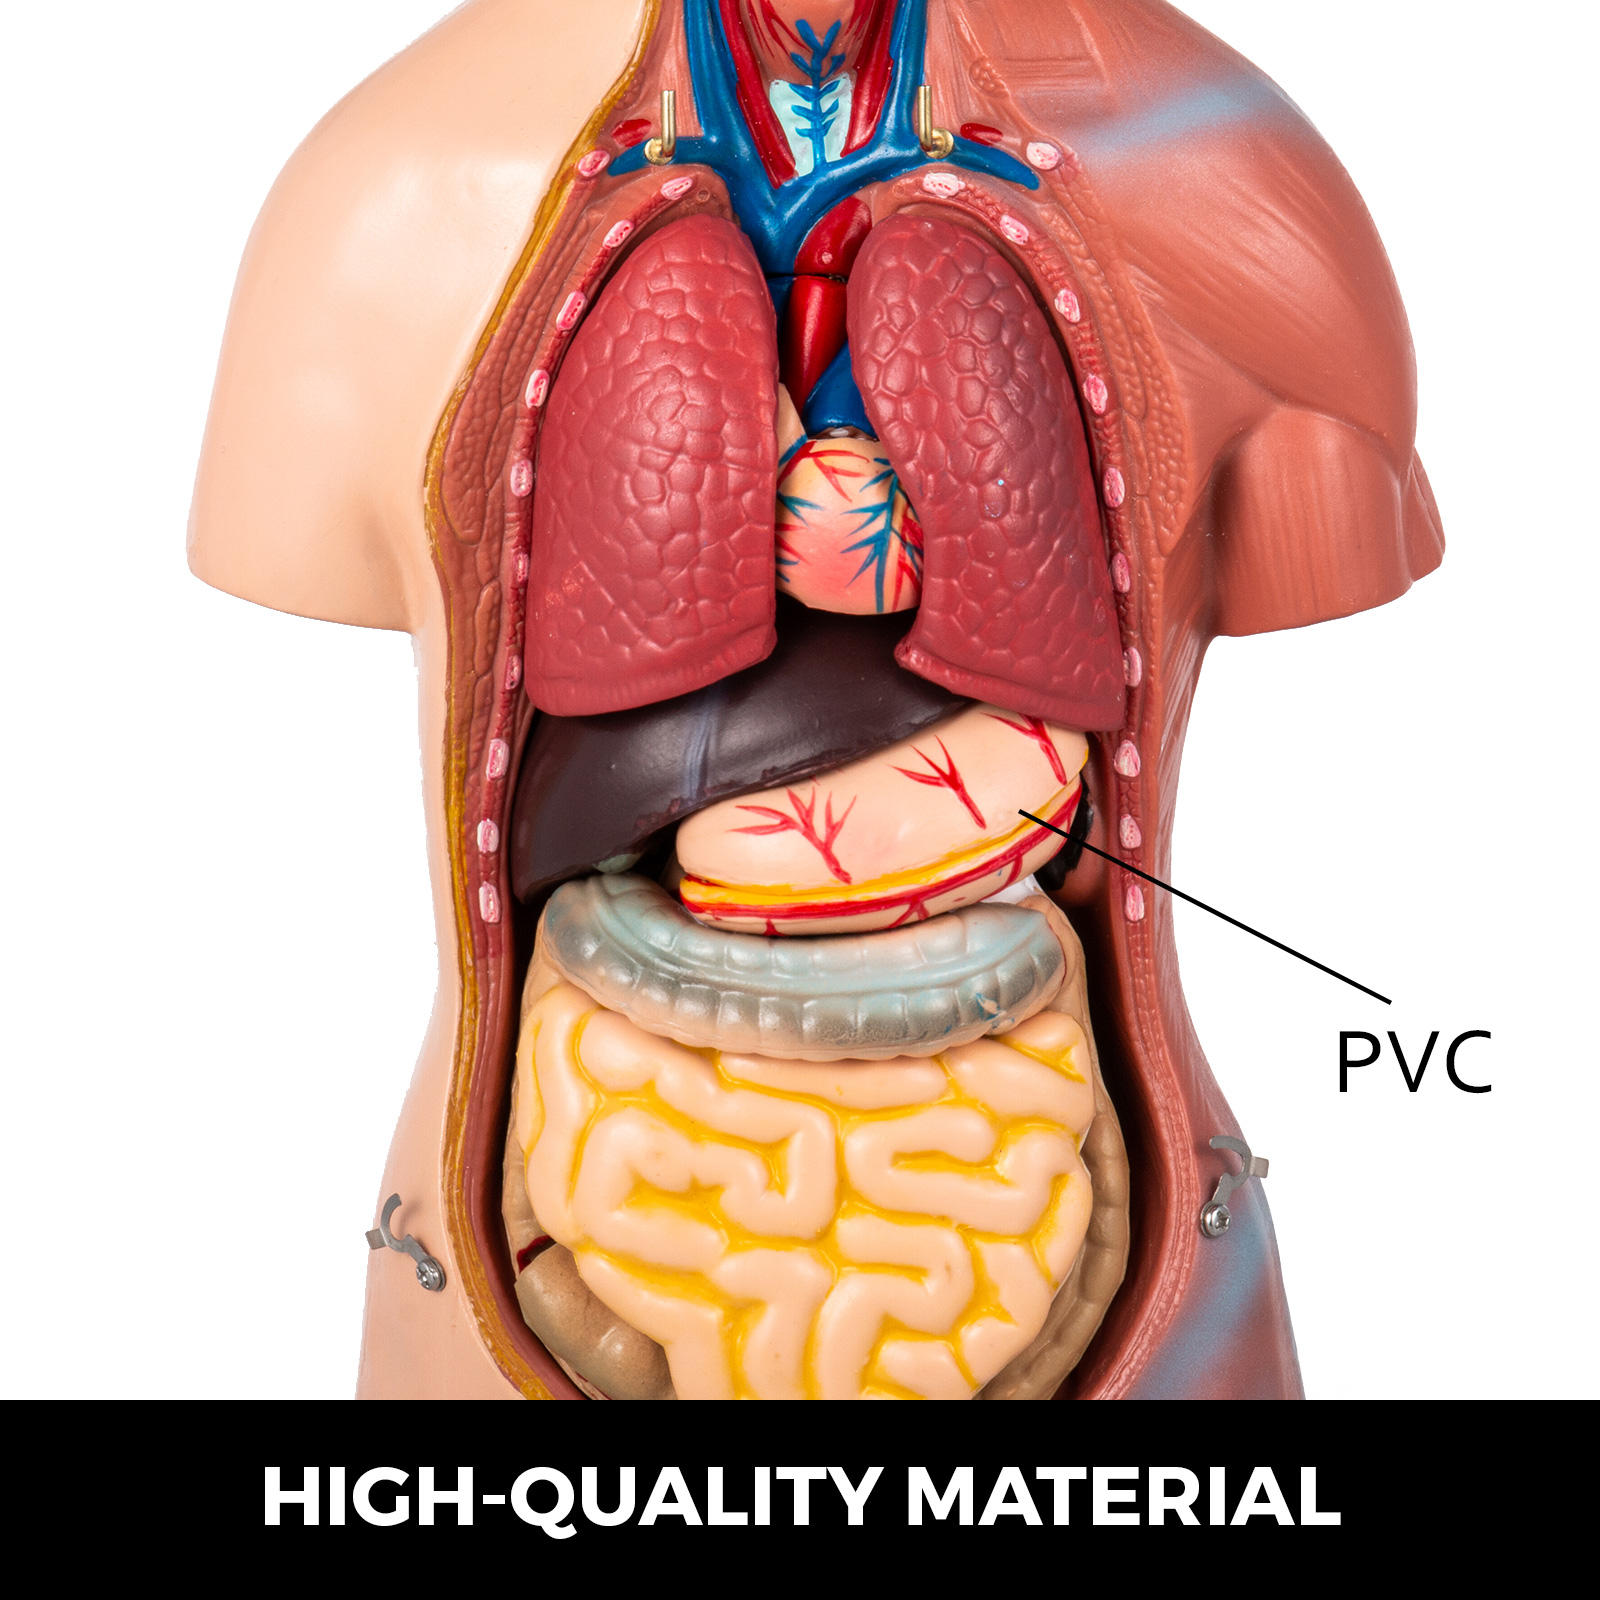 42cm PVC menschliches Kinderkörperskelett Modell gesetztes anatomisches 